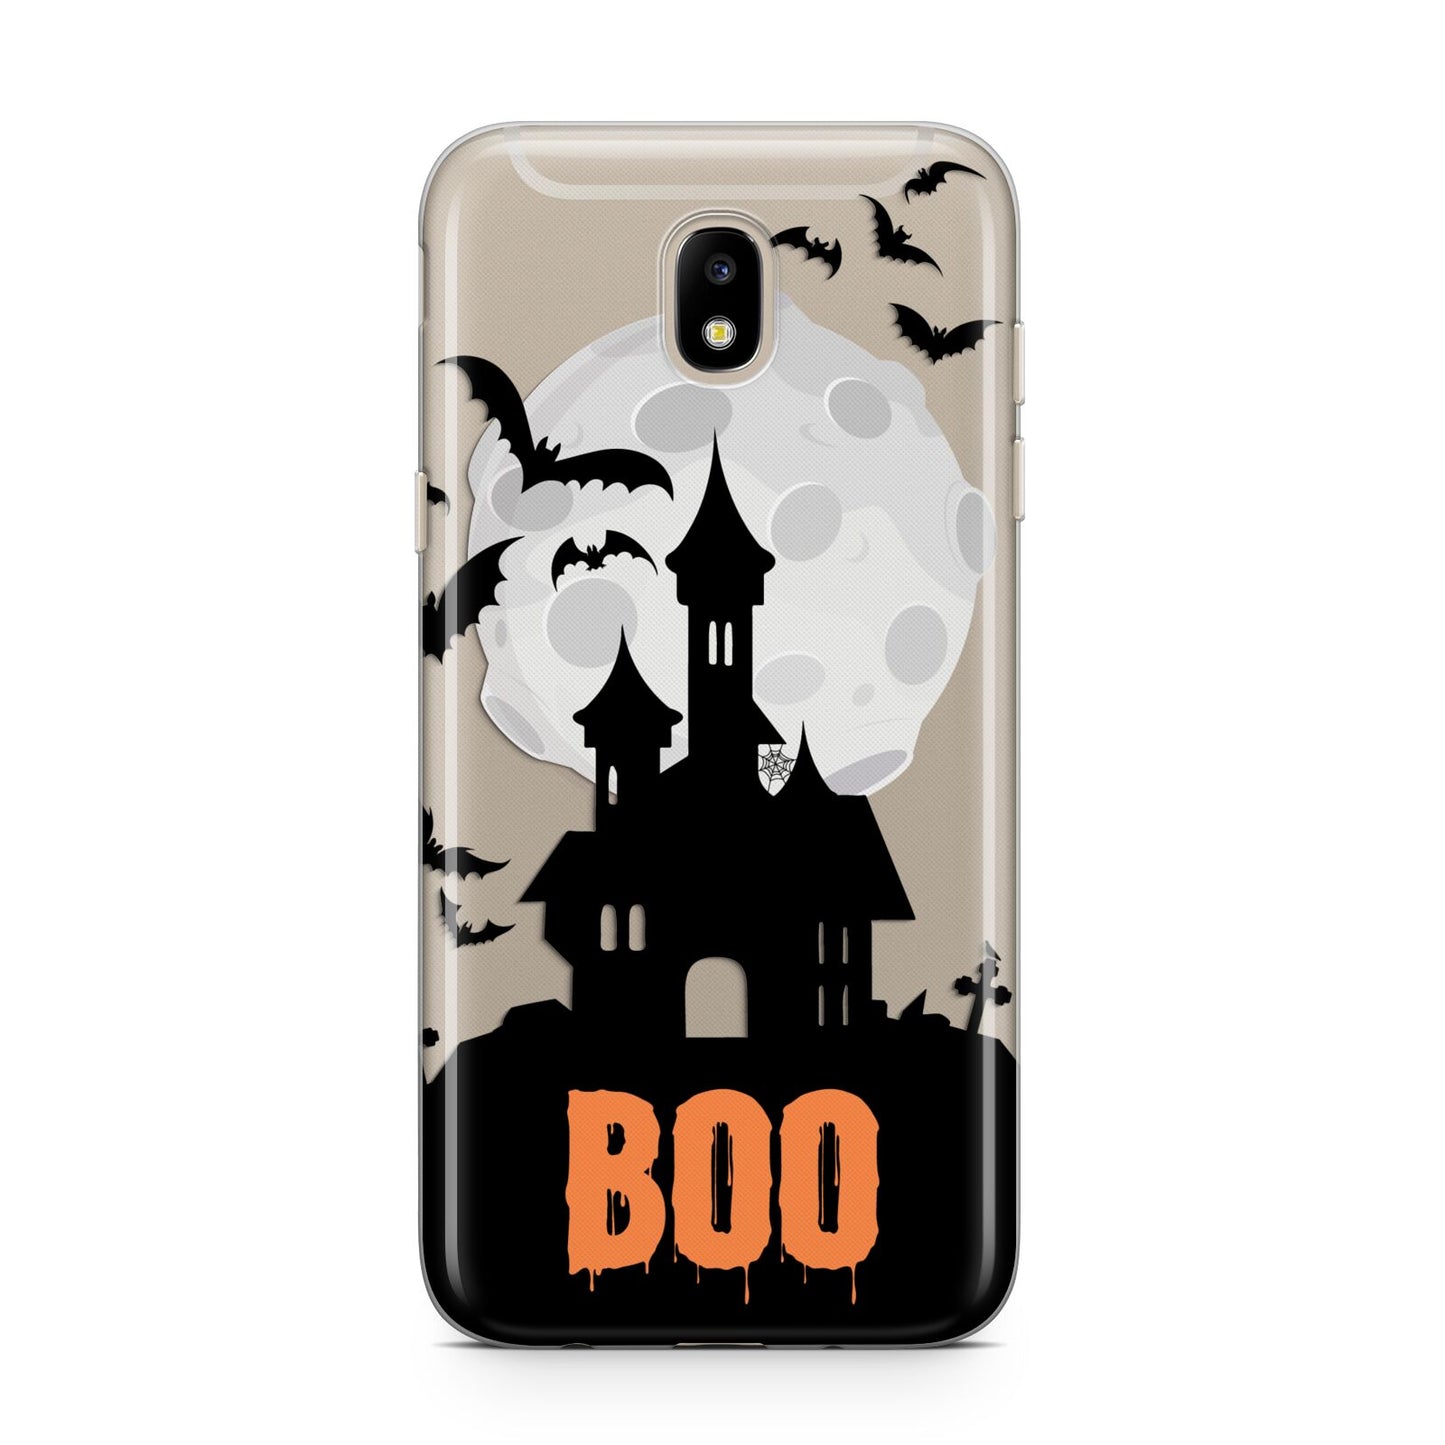 Boo Gothic Black Halloween Samsung J5 2017 Case